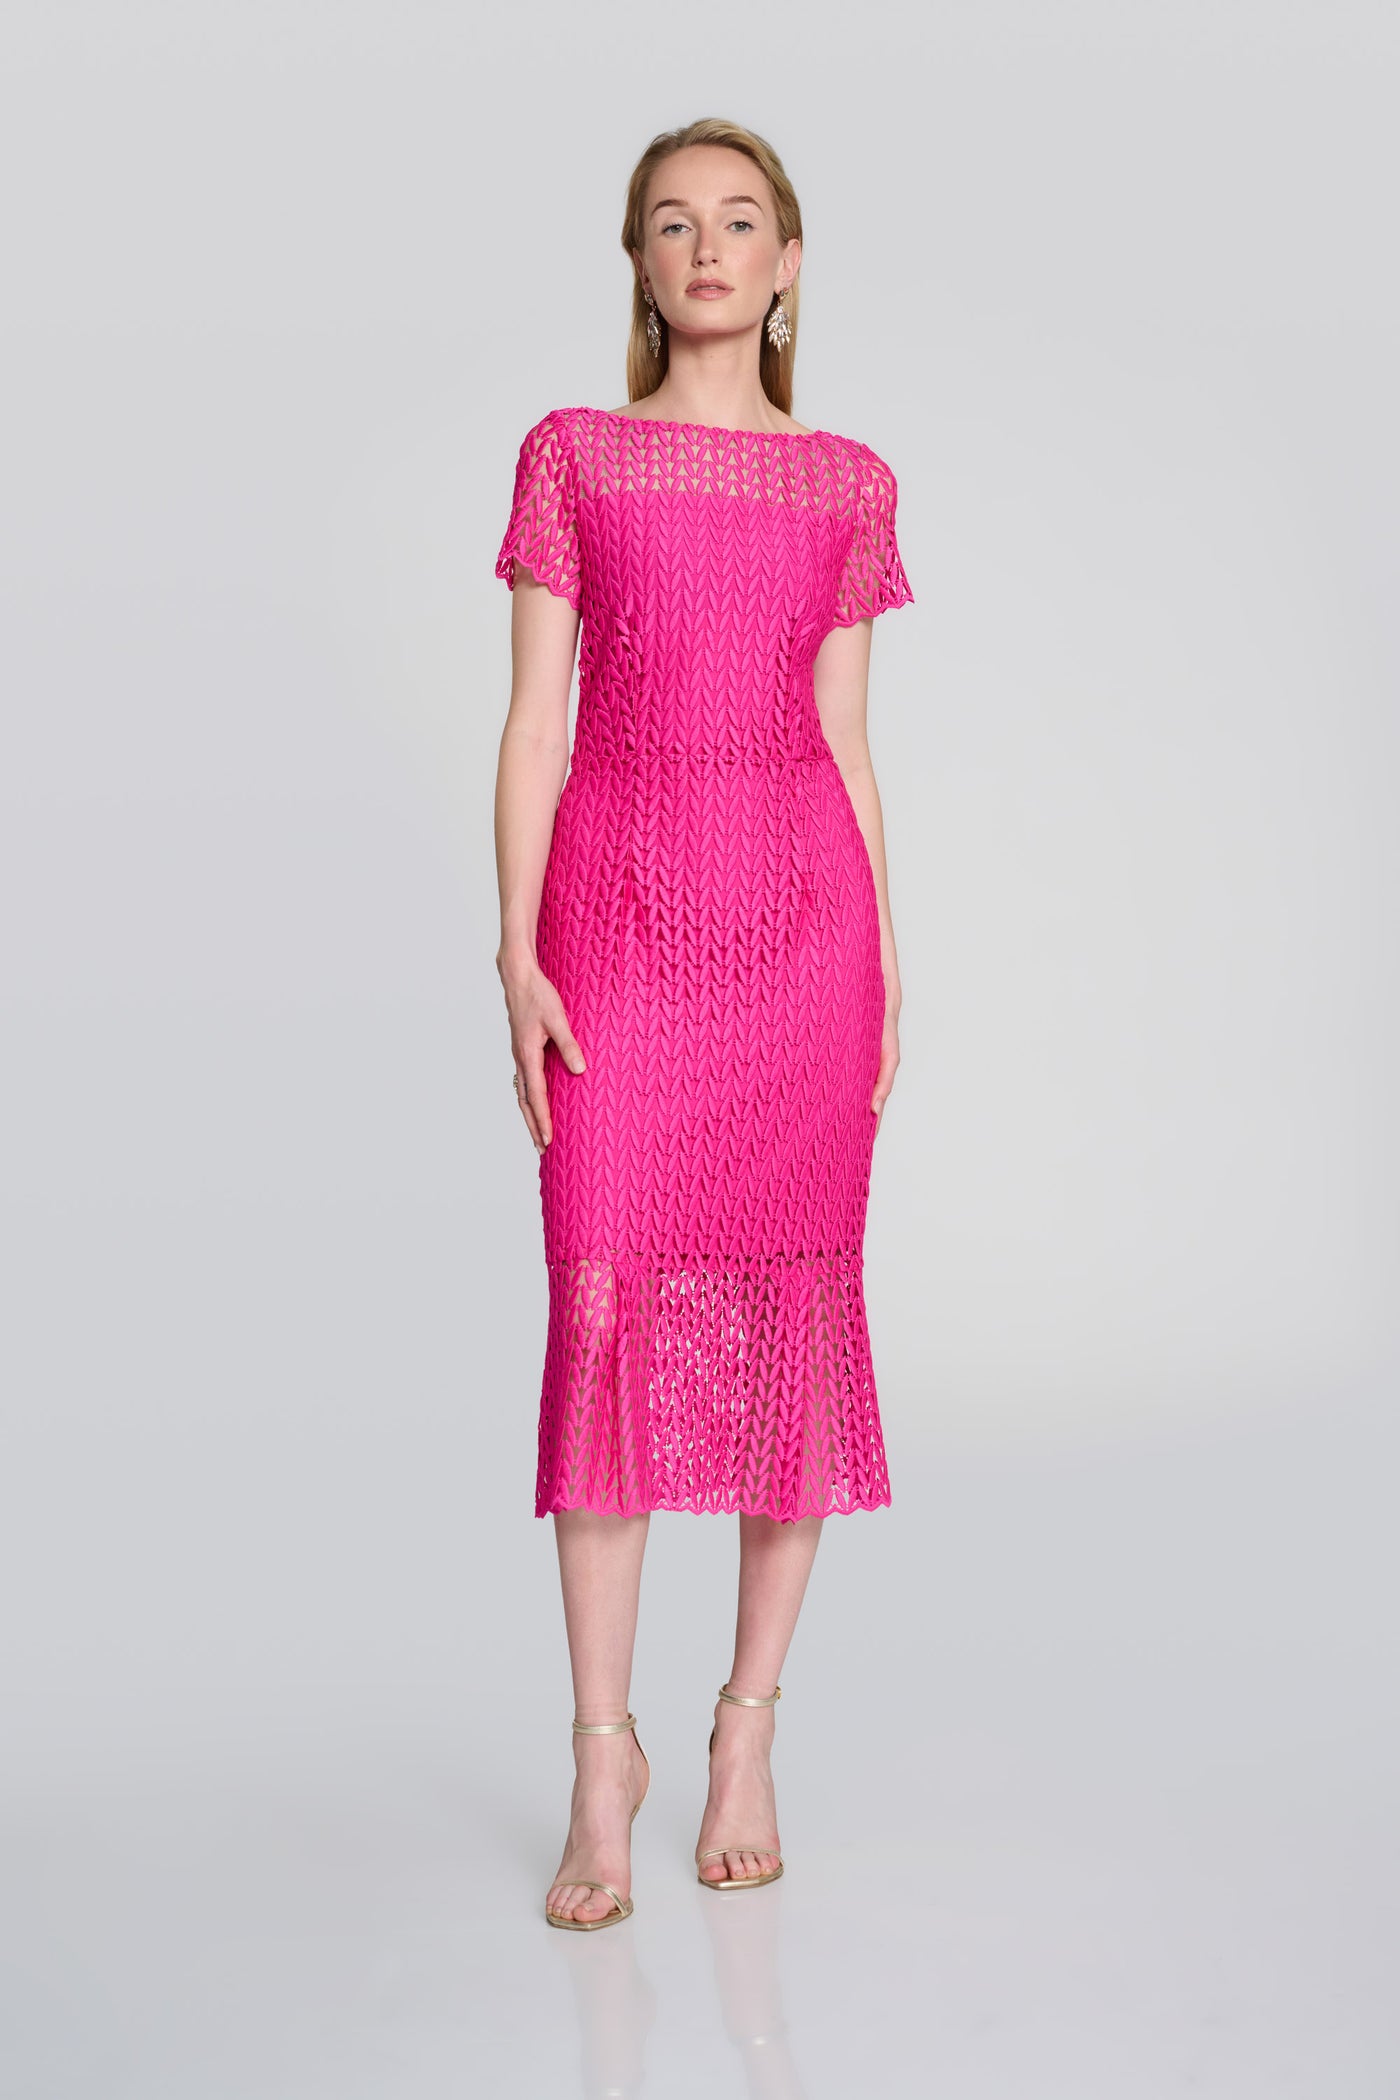 Joseph Ribkoff Pink Guipure Lace Flounce Dress